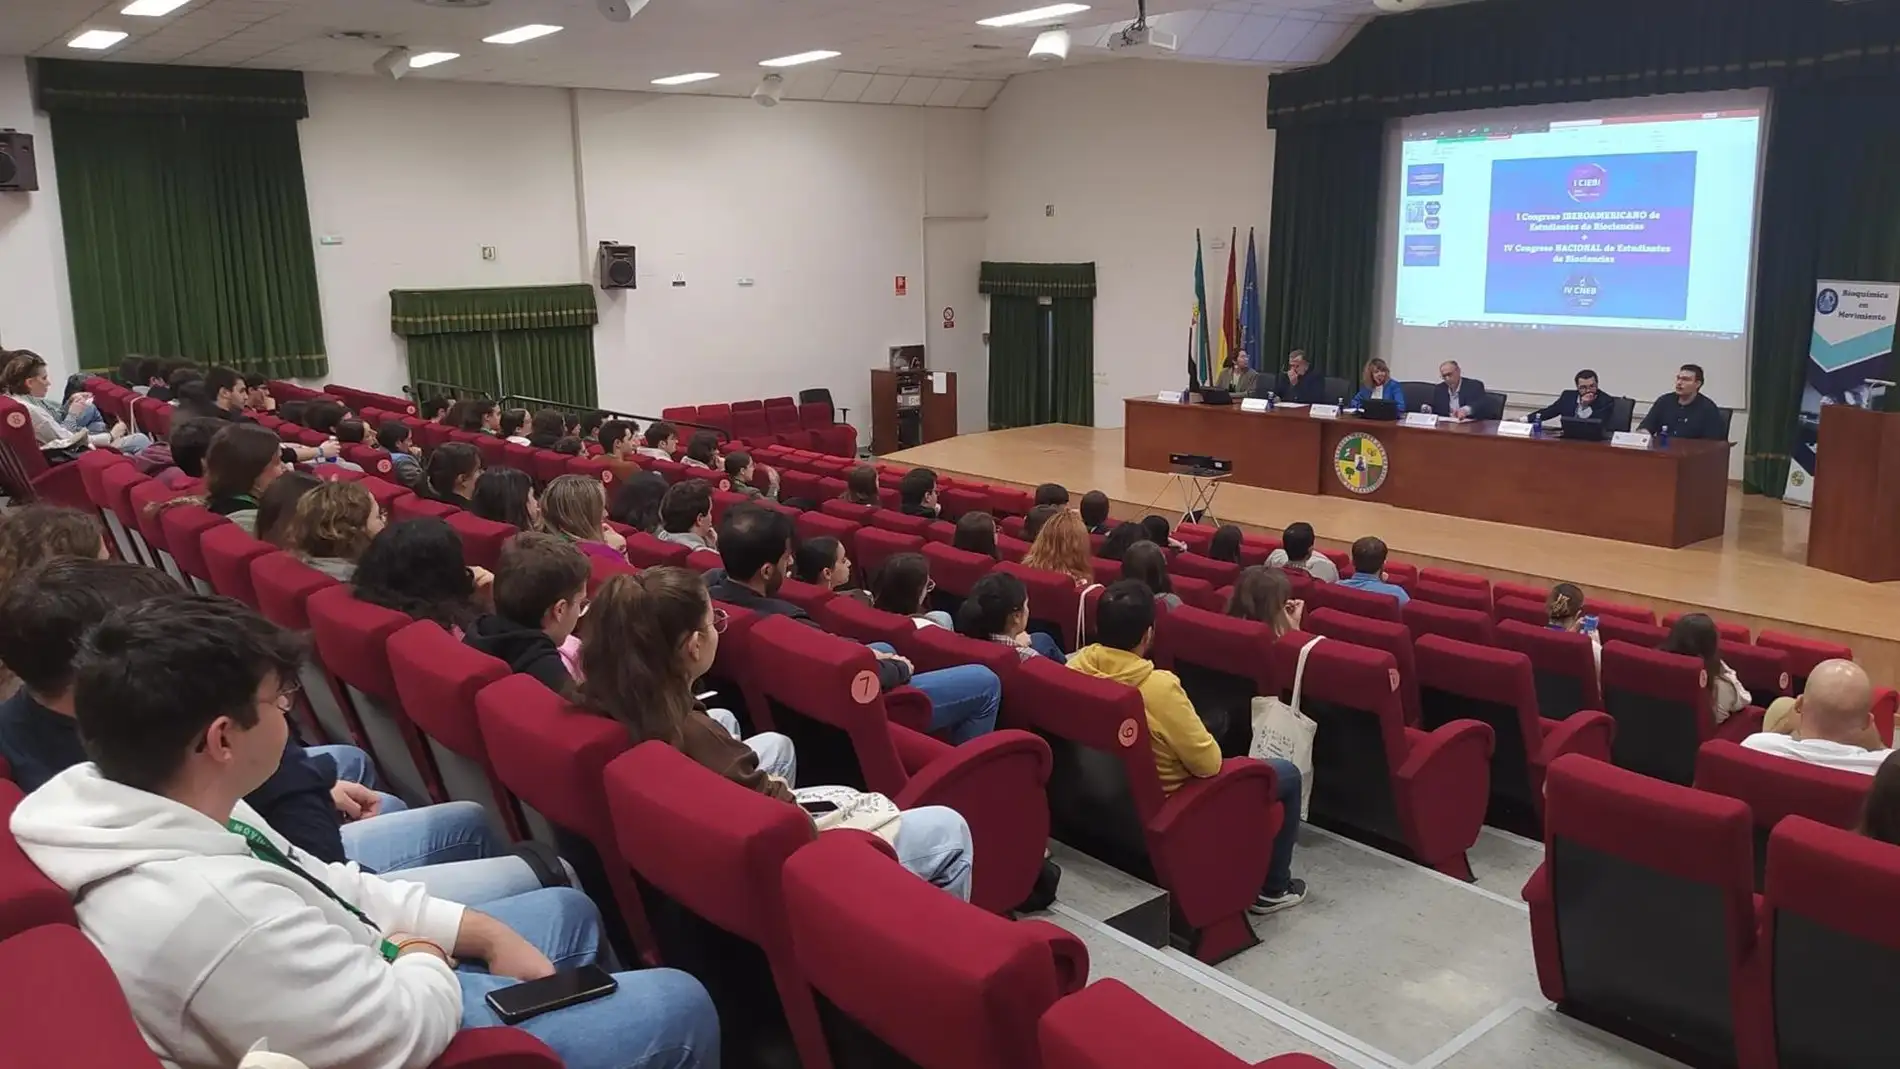 Más de 150 estudiantes de doce universidades españolas participan en Cáceres en un congreso de biociencias